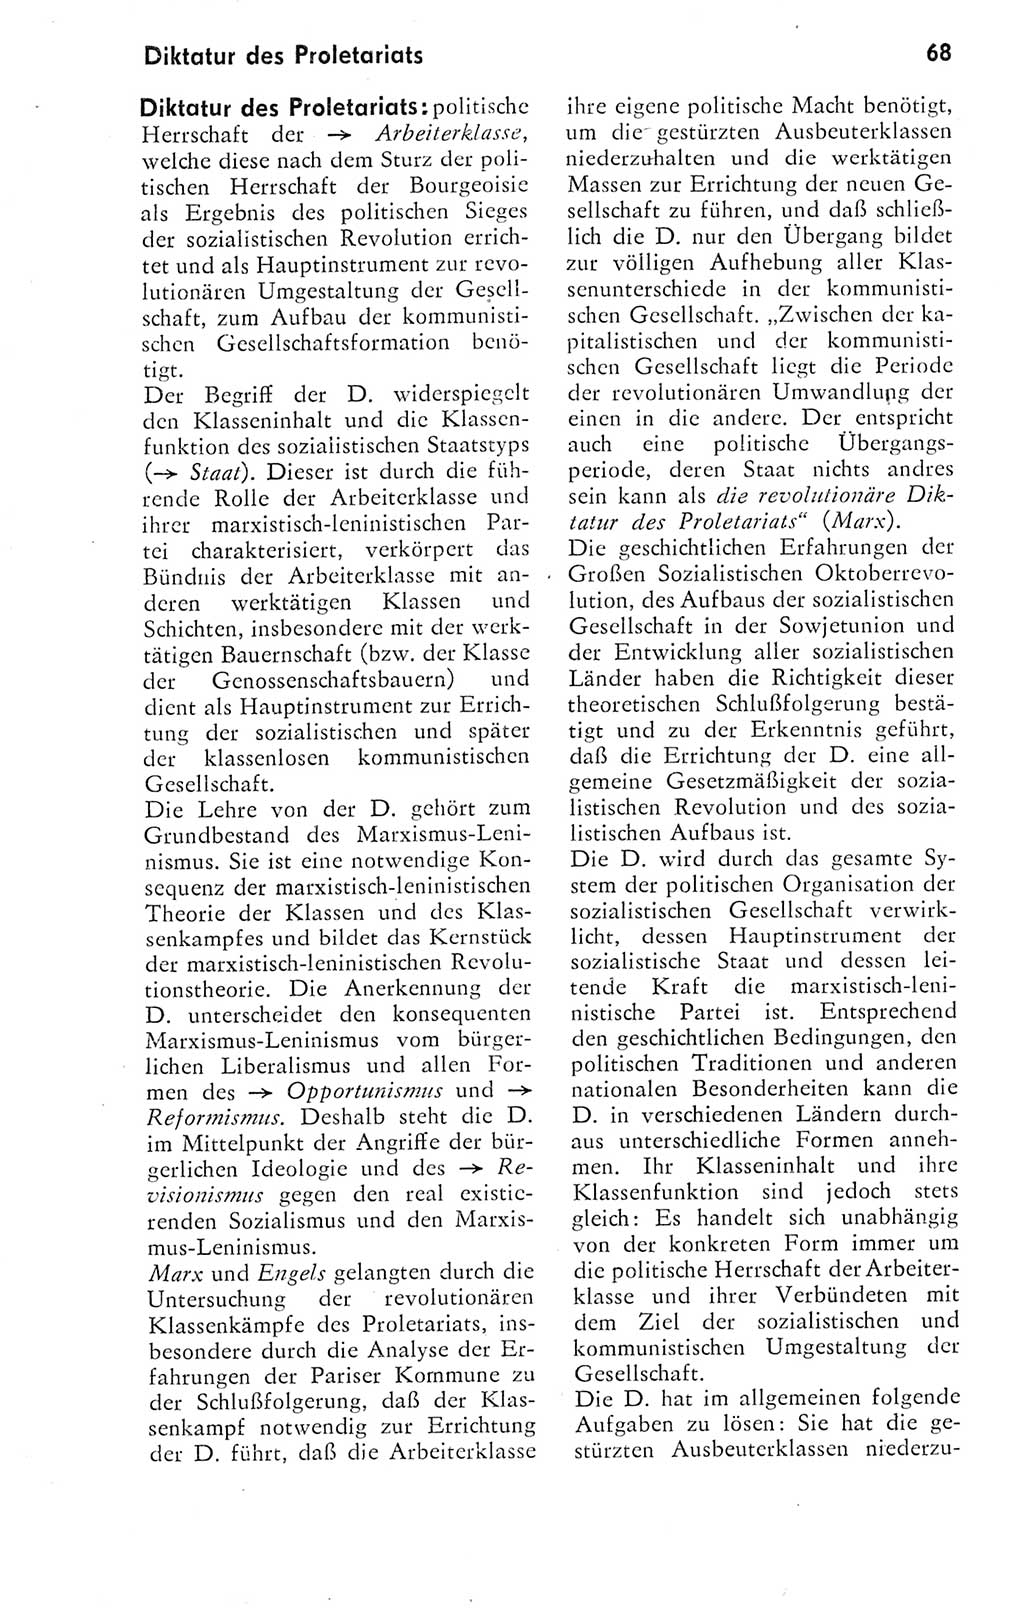 Kleines Wörterbuch der marxistisch-leninistischen Philosophie [Deutsche Demokratische Republik (DDR)] 1974, Seite 68 (Kl. Wb. ML Phil. DDR 1974, S. 68)